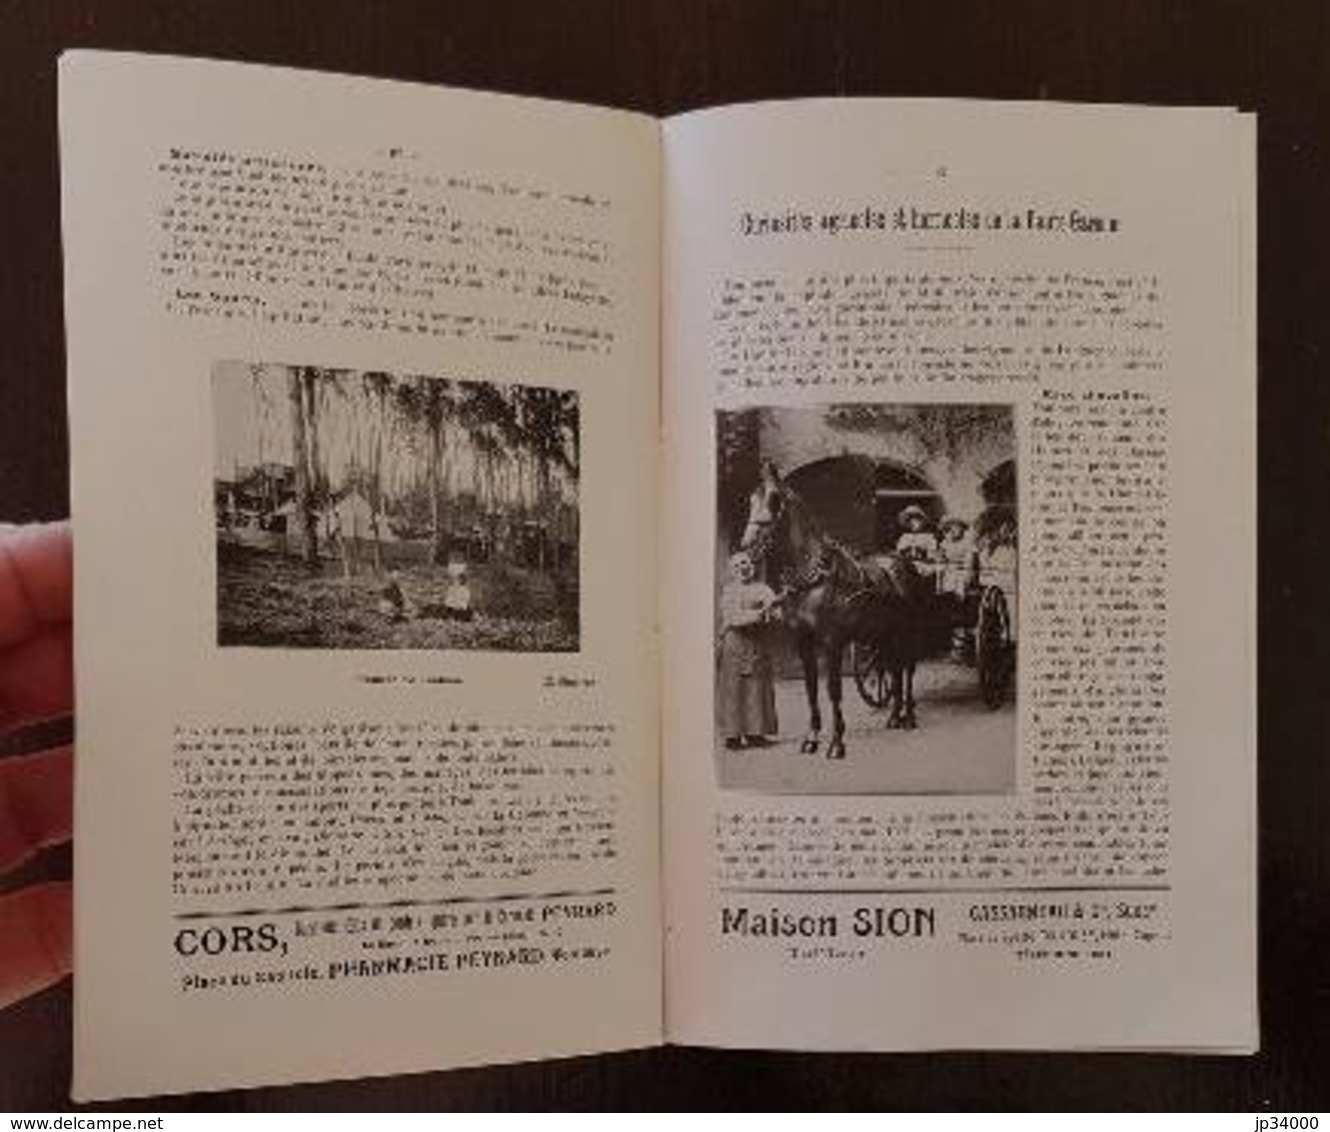 Livret-Guide de TOULOUSE et HAUTE GARONNE 1912. Bel état. (regionalisme midi pyrénées, languedoc) FRAIS DE PORT INCLUS